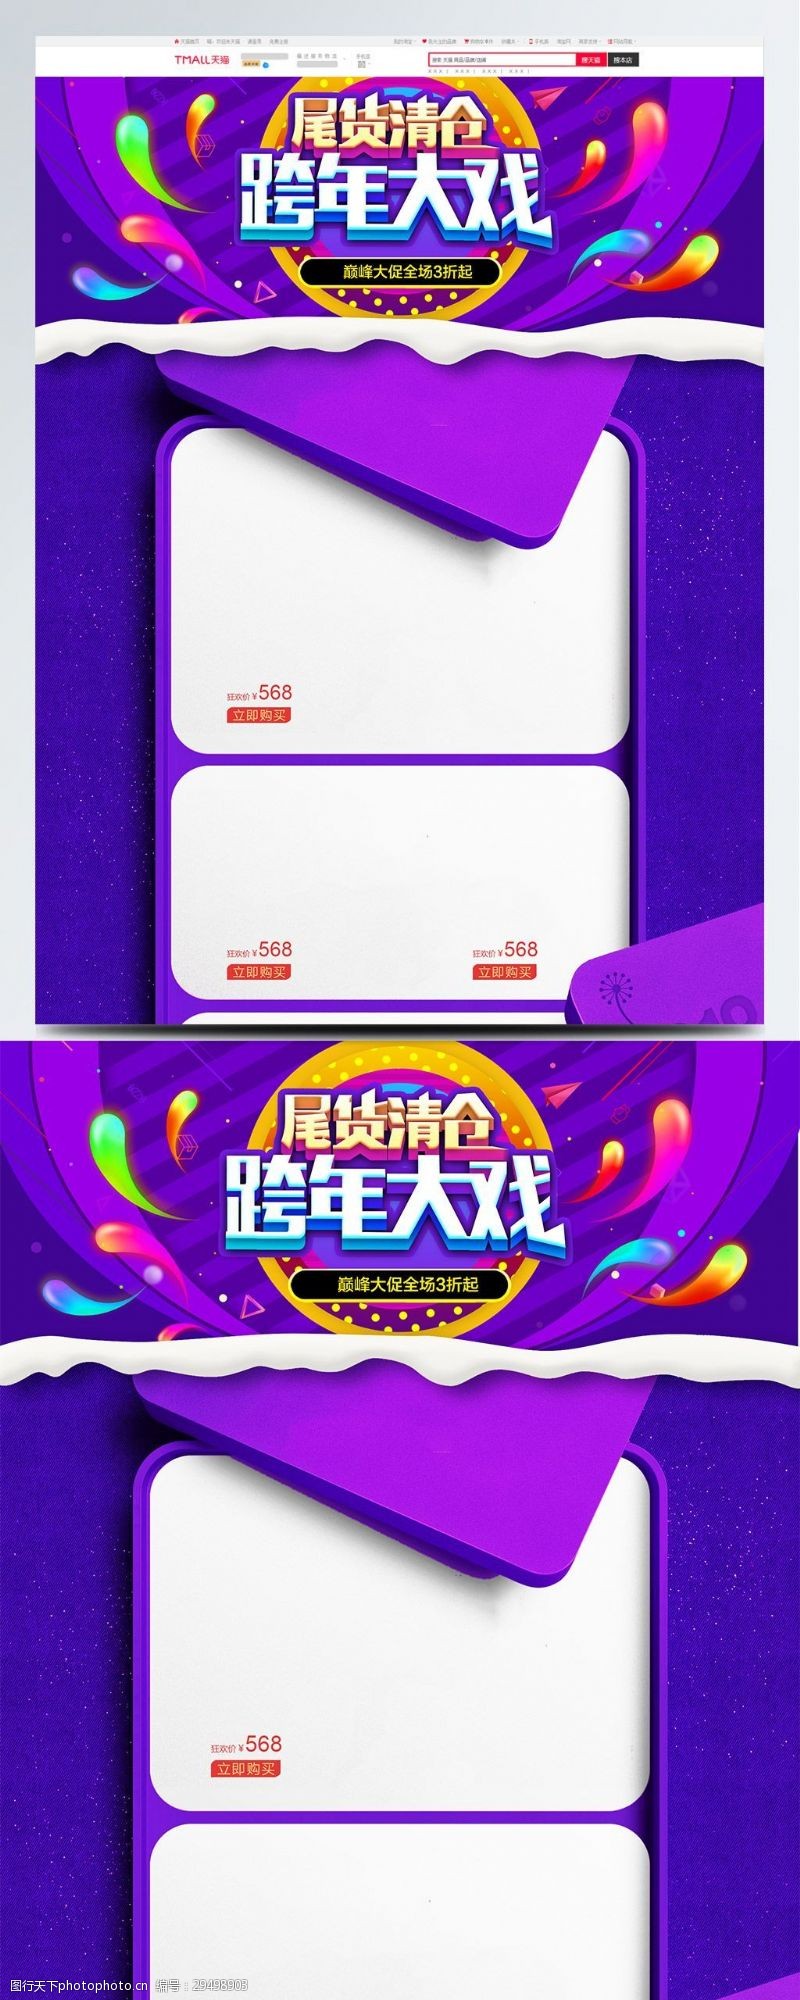 首页页尾紫色天猫跨年狂欢节礼盒促销首页模版